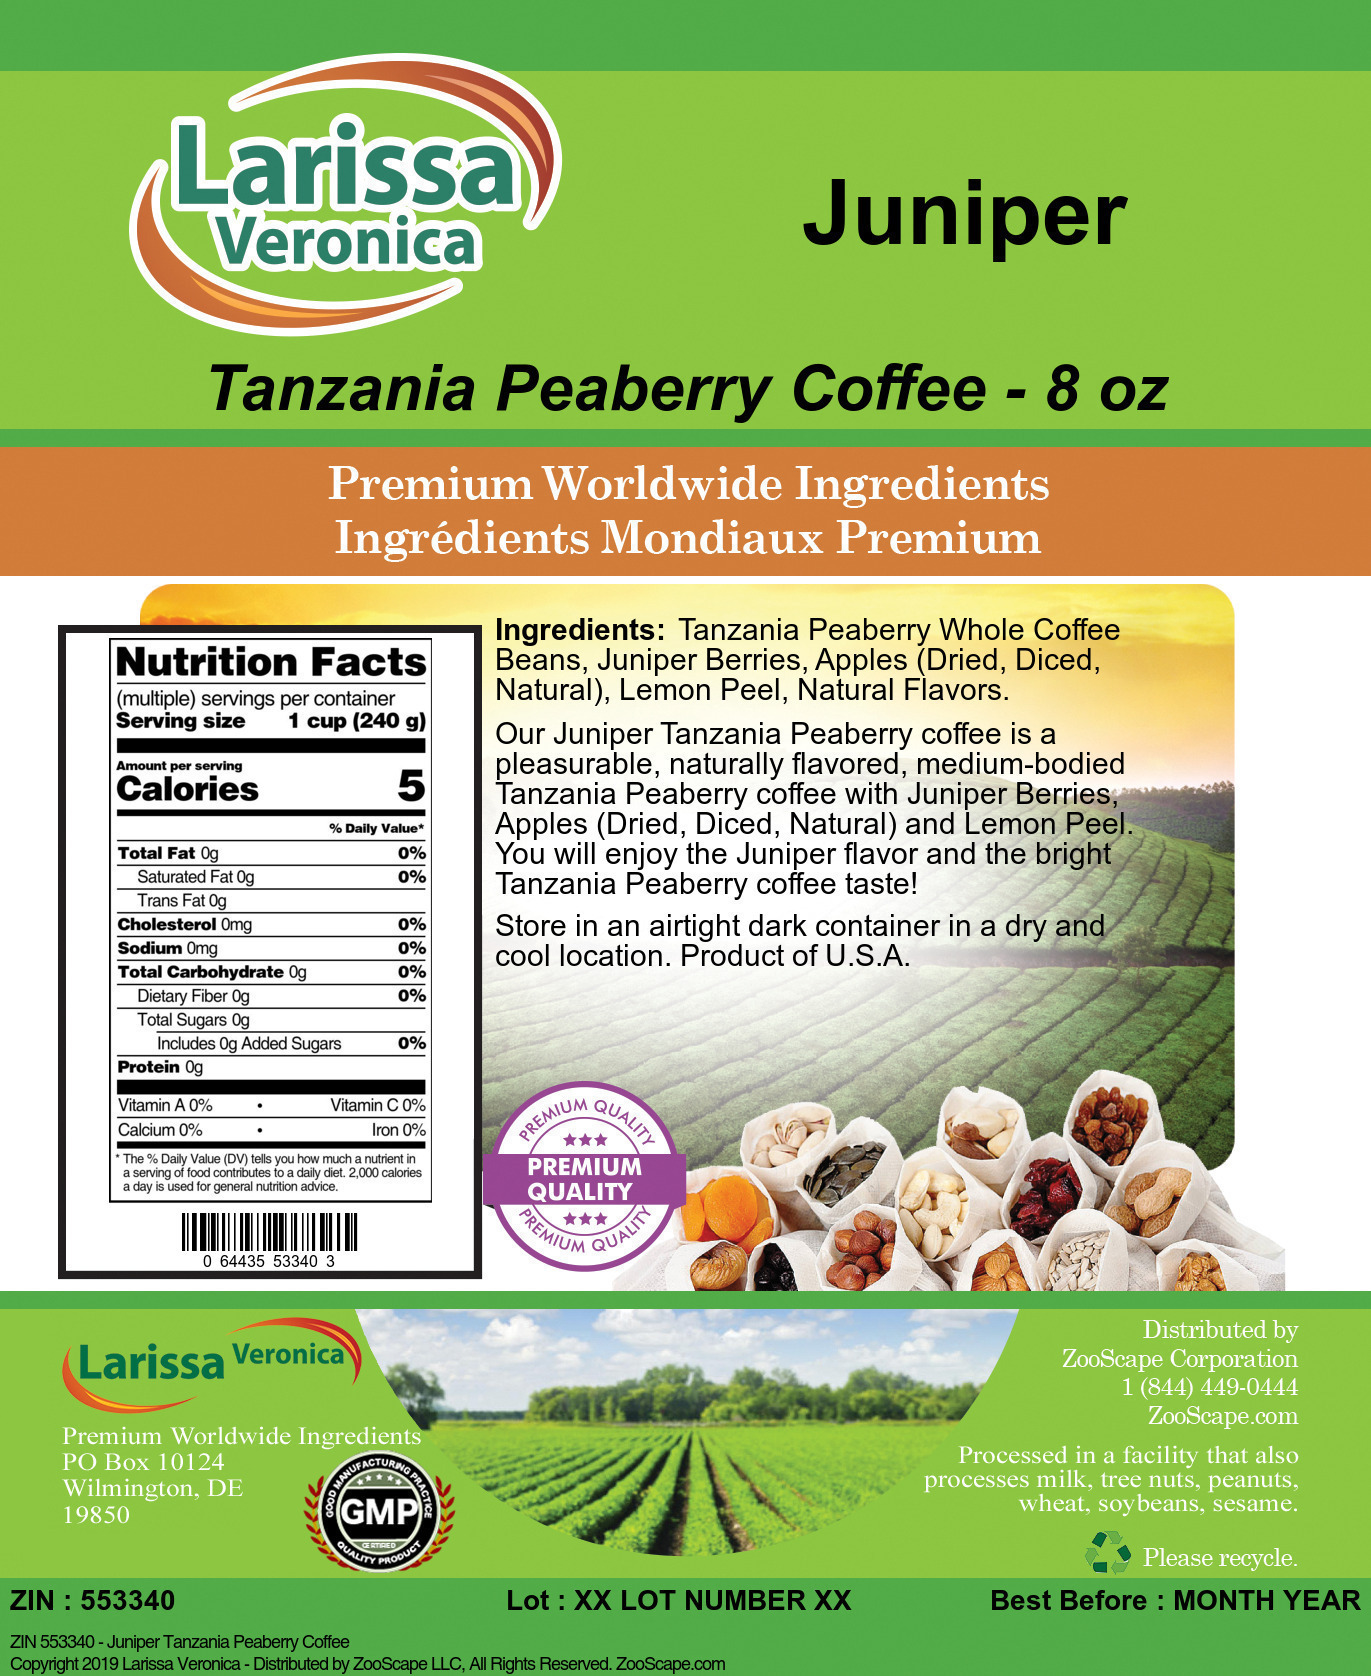 Juniper Tanzania Peaberry Coffee - Label